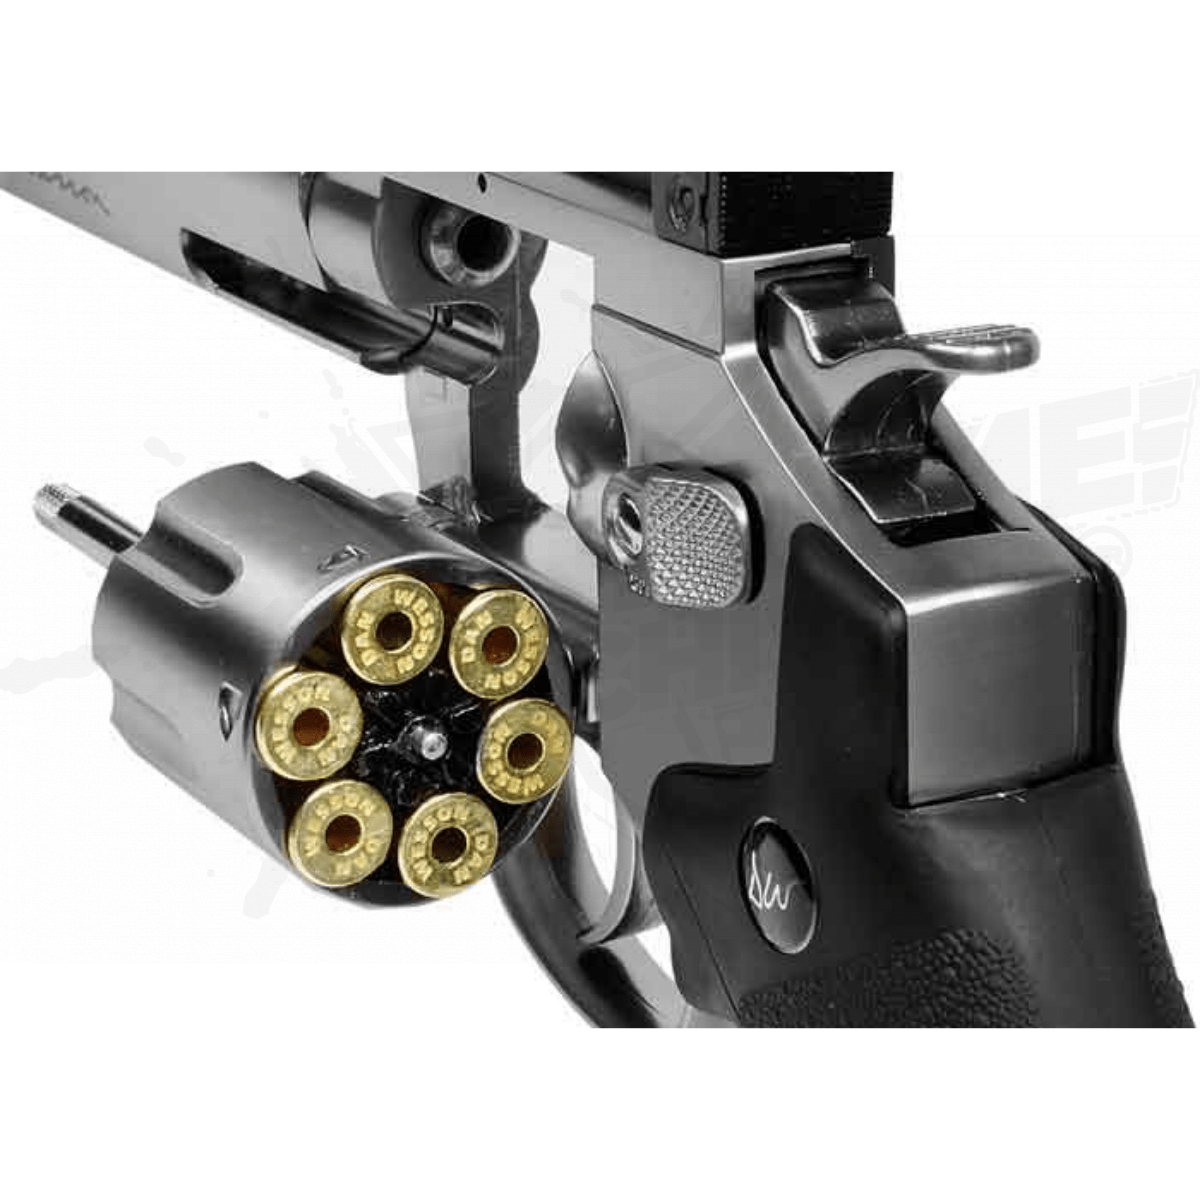 Paquete Pistola Gamo P-25 CO2 Pellets .177 (4.5mm) – XtremeChiwas